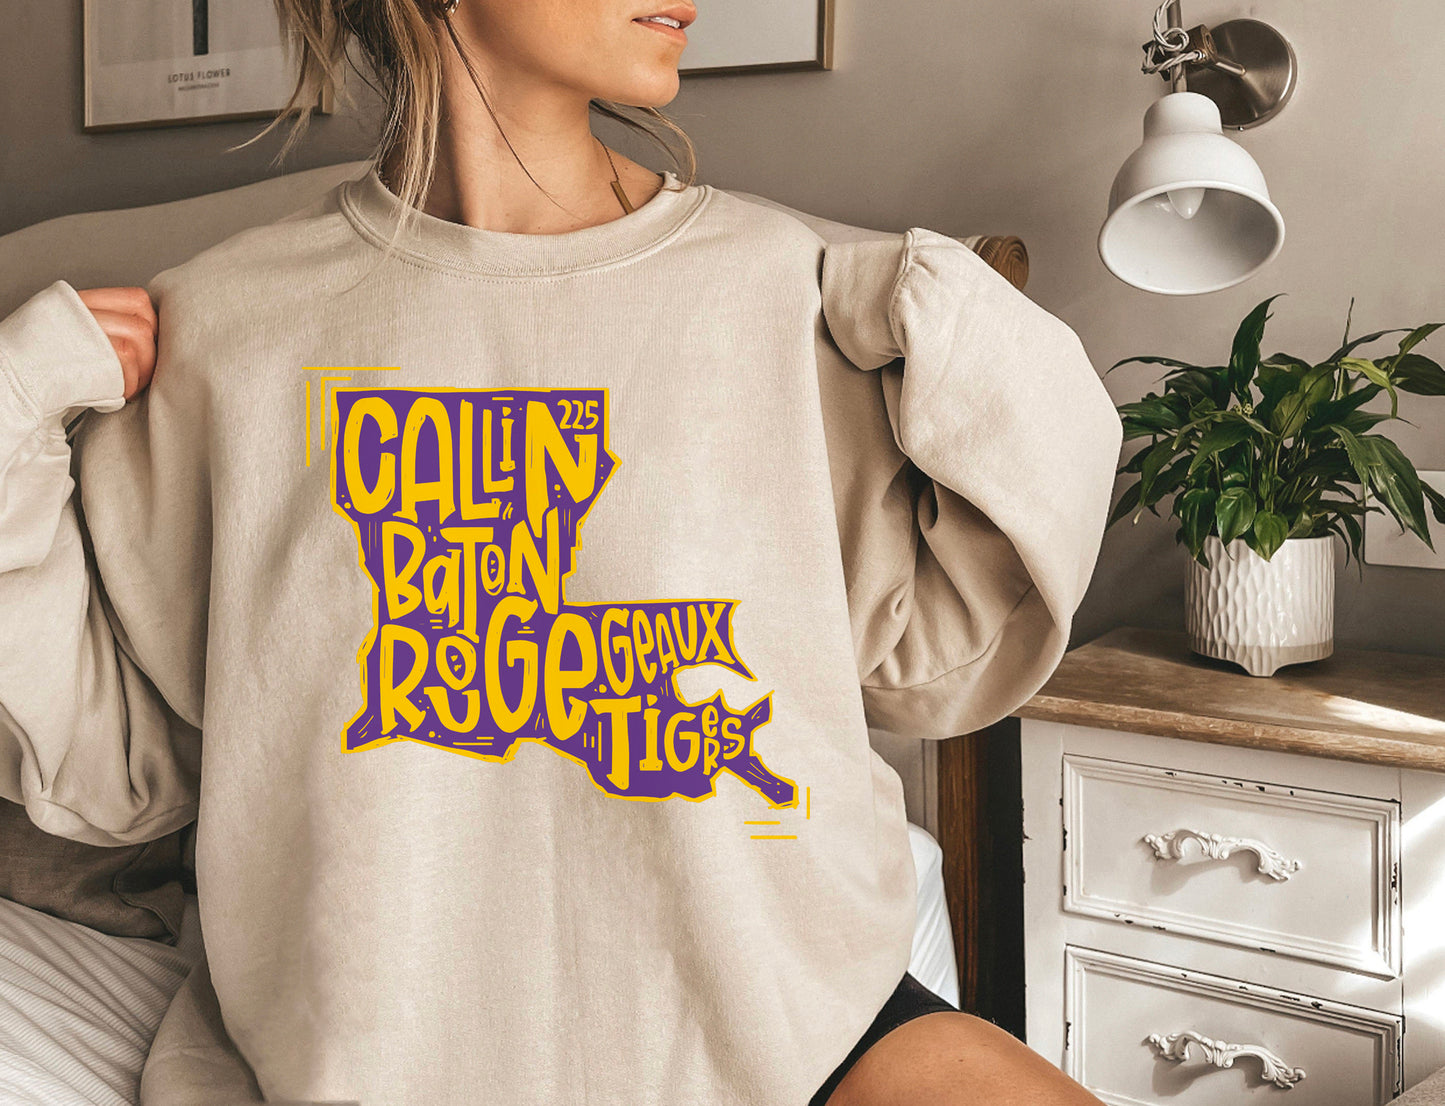 Callin Baton Rouge Sweatshirt